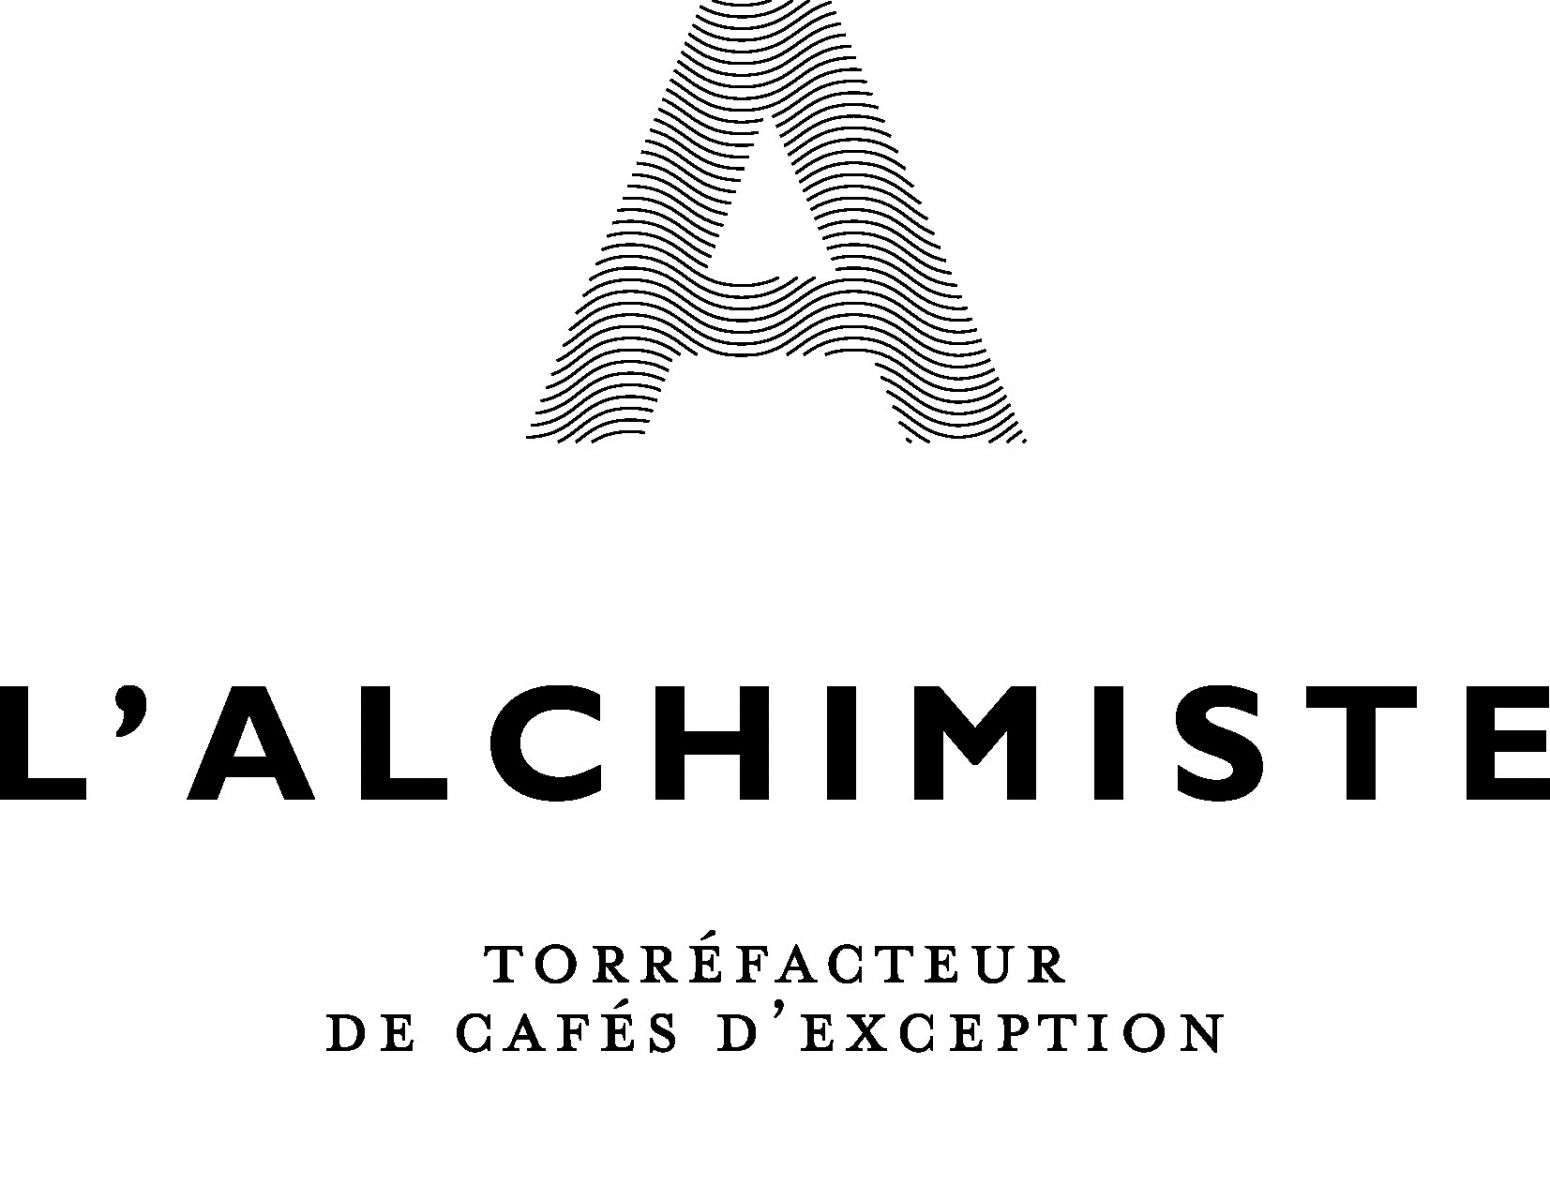 café boutique de l'Alchimiste torréfacteur Bordeaux 